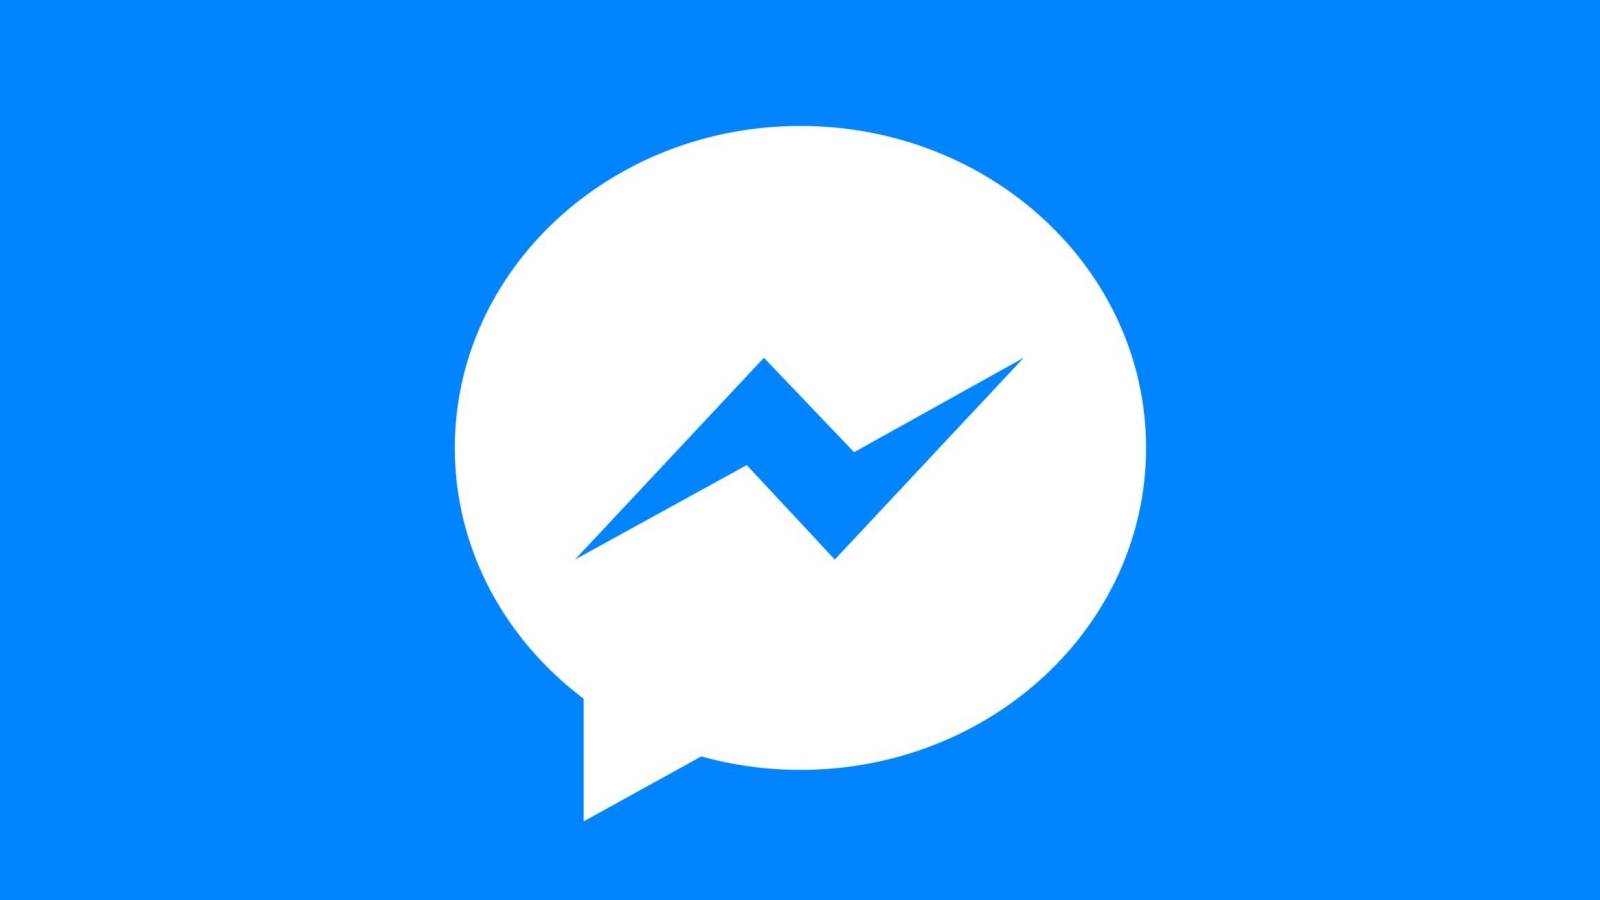 Wydano aktualizację Facebook Messenger, jakie zmiany wprowadza teraz